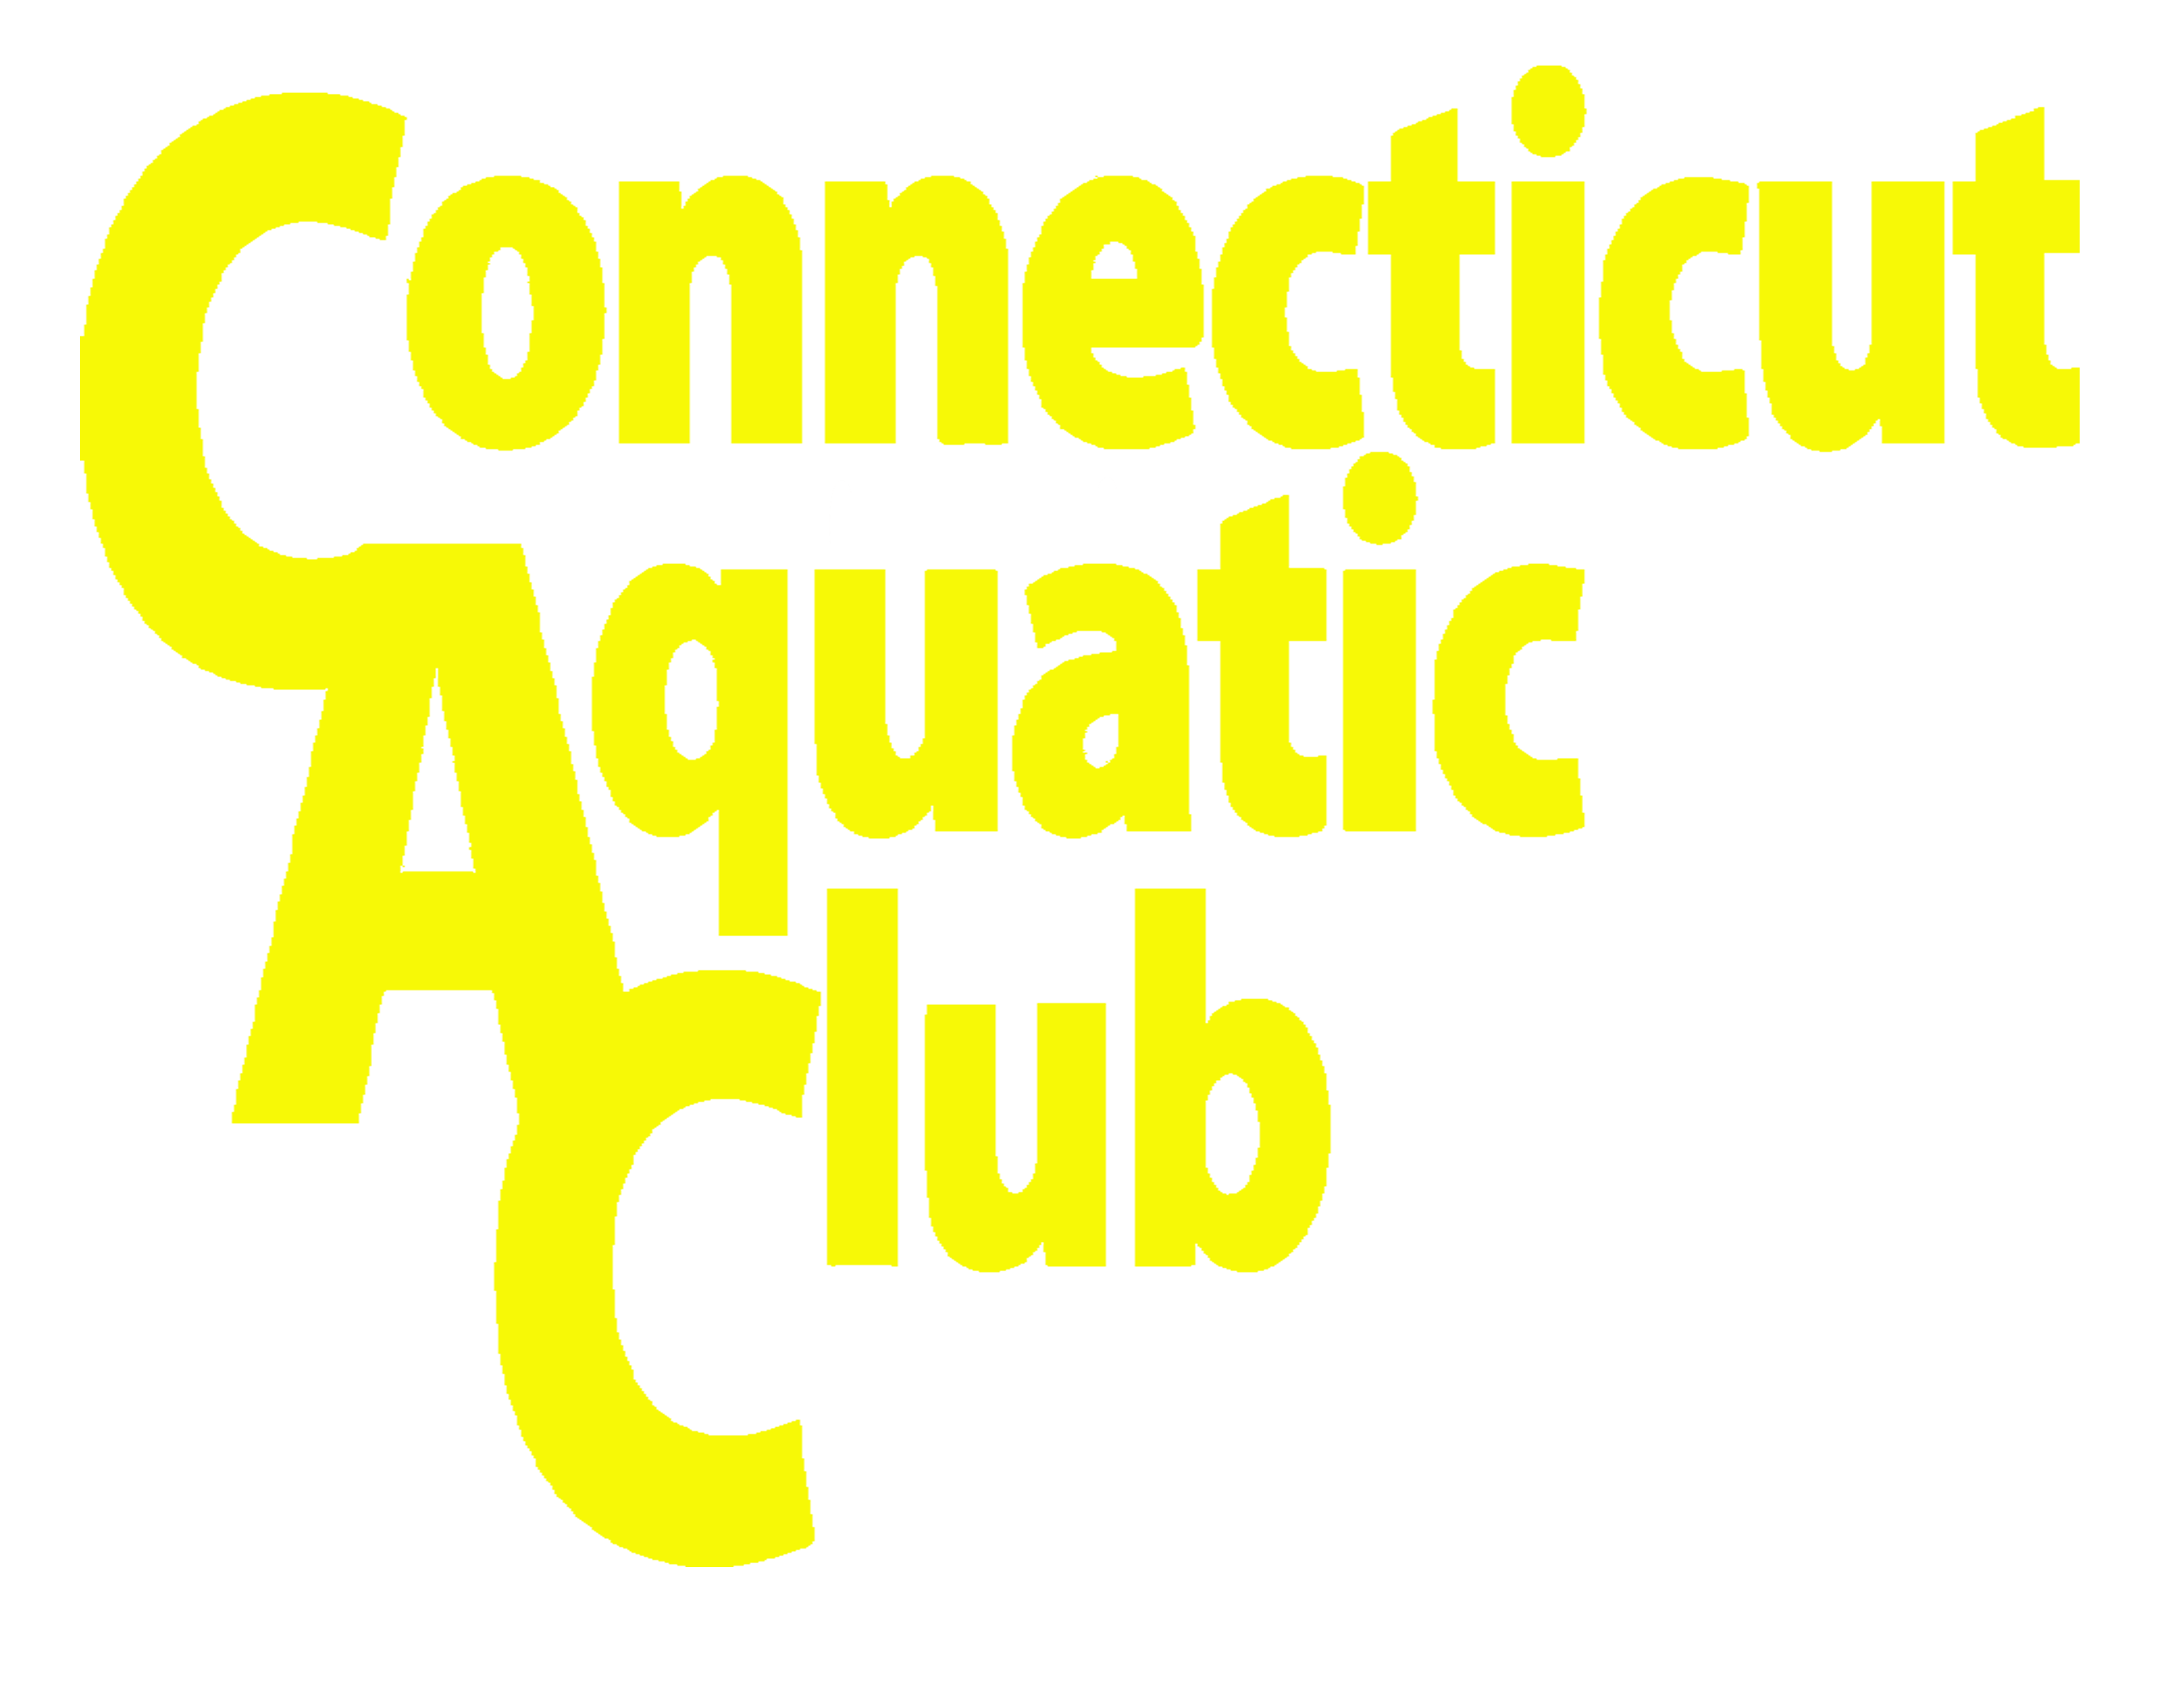 Connecticut Aquatic Club